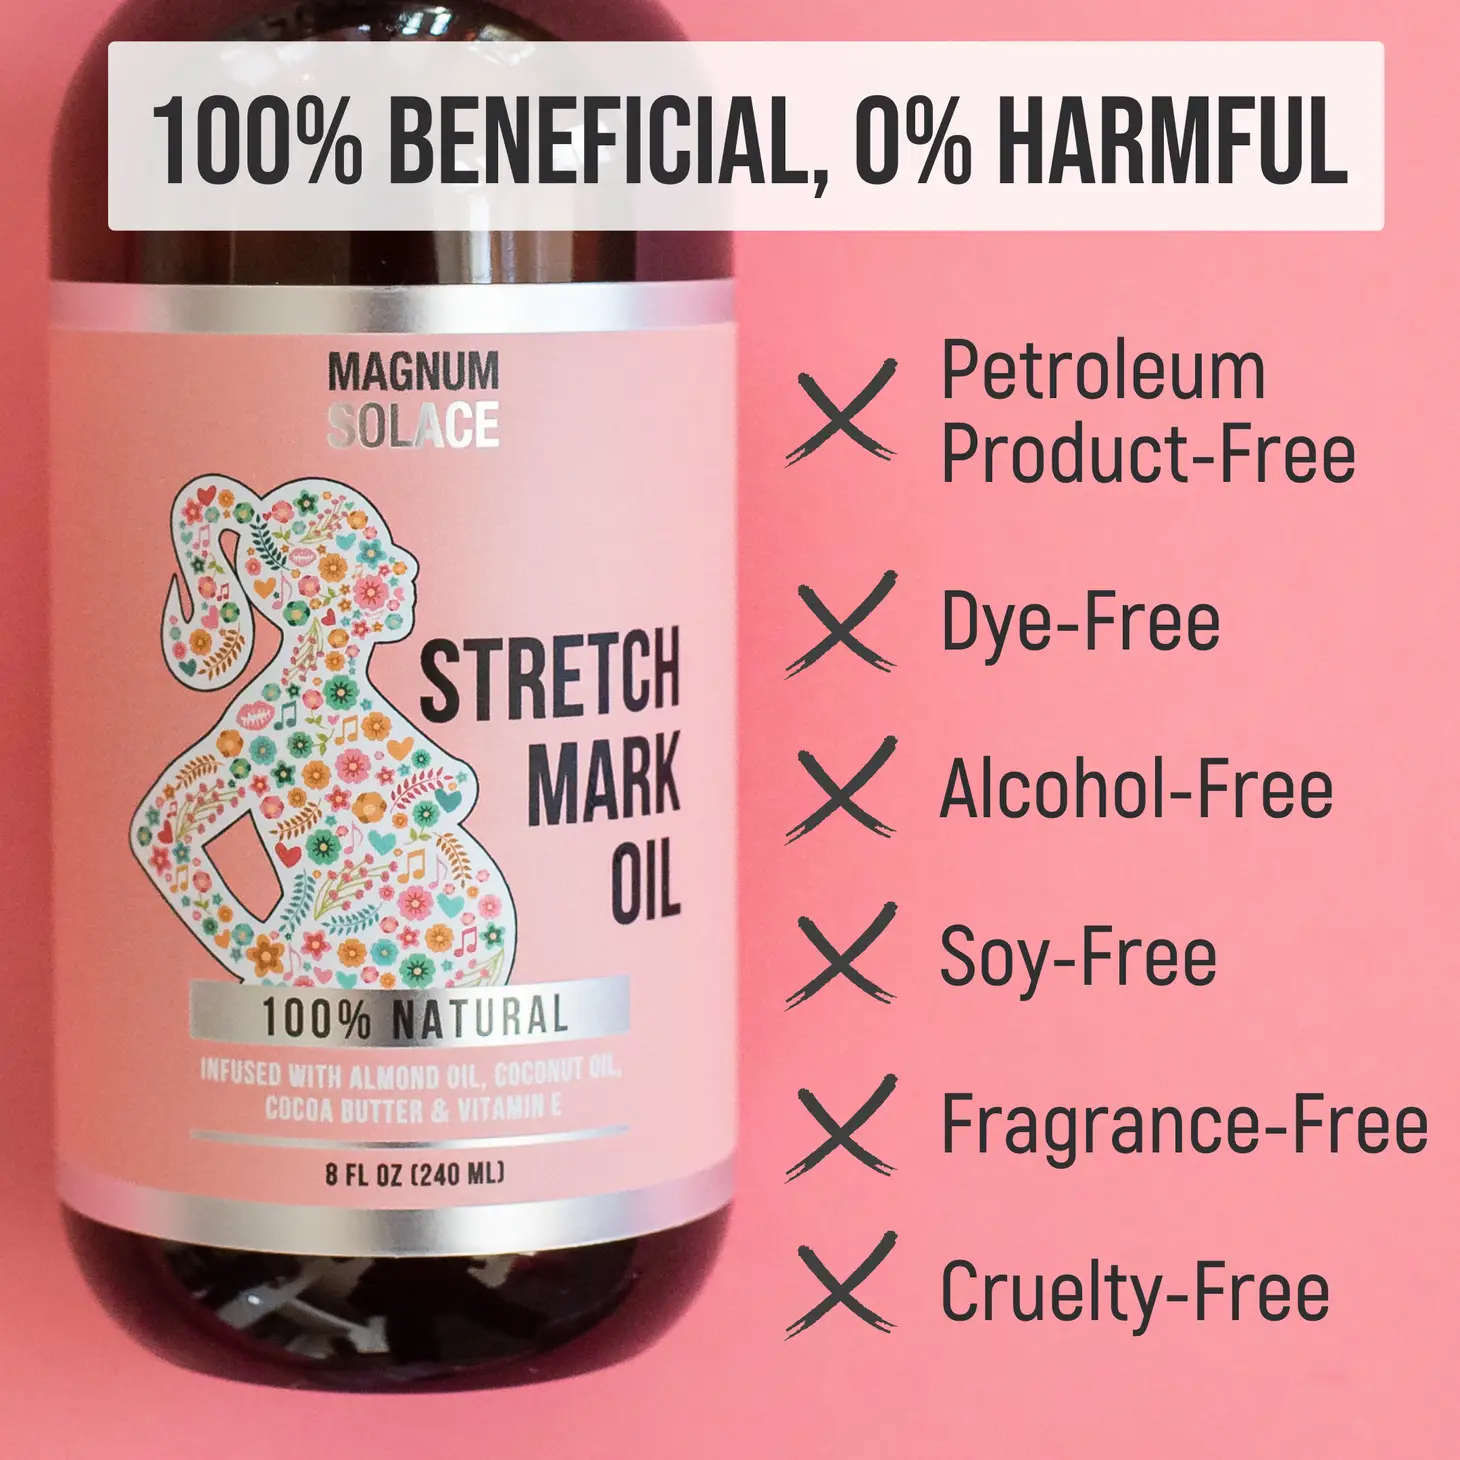 Stretch Mark Oil